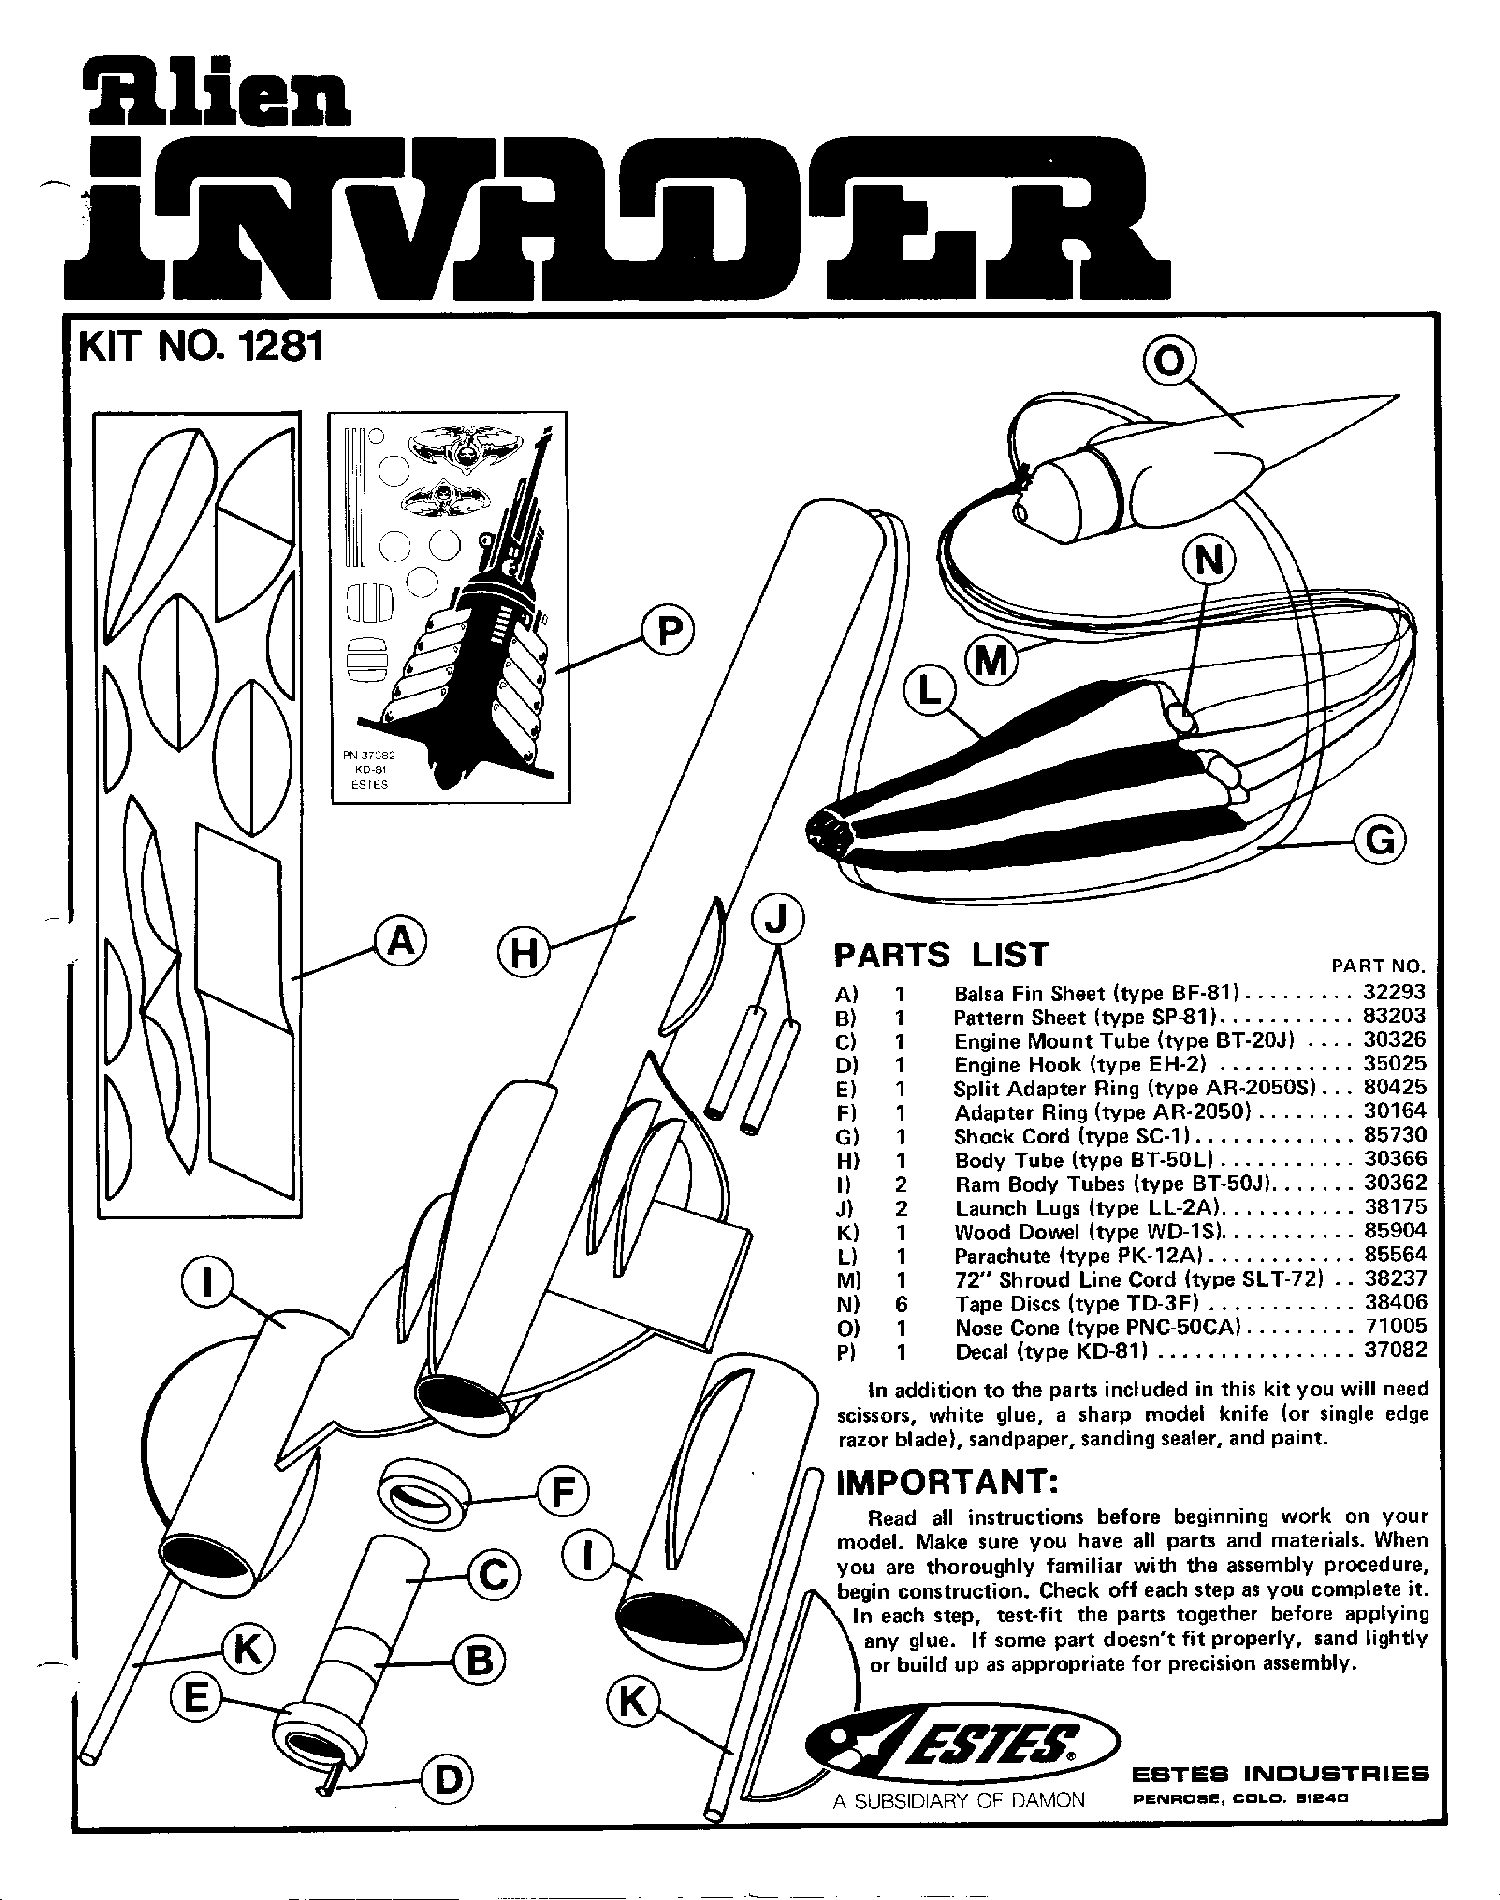 Alien Invader Page 1